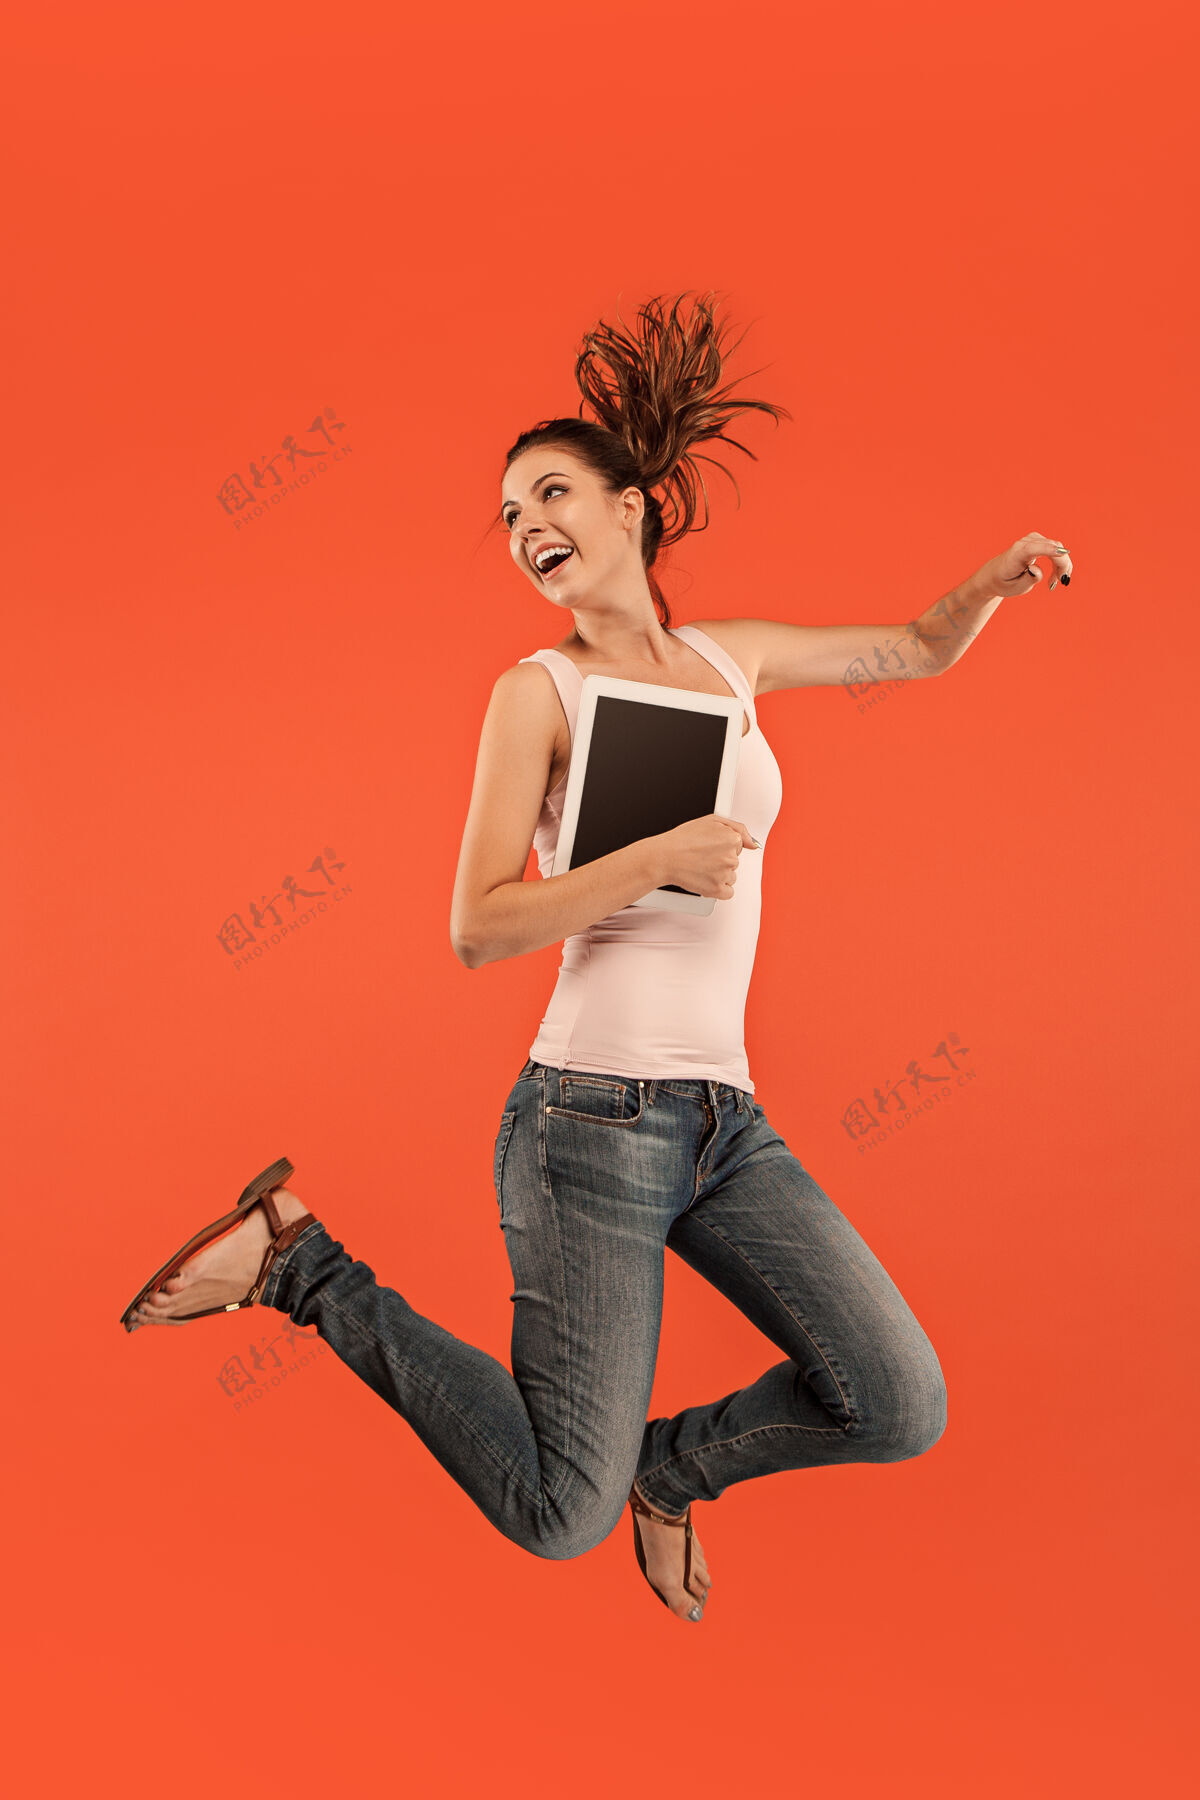 成人年轻女子跳跃时使用笔记本电脑或平板电脑小玩意越过蓝色奔跑的女孩在运动或运动工作绿色休闲